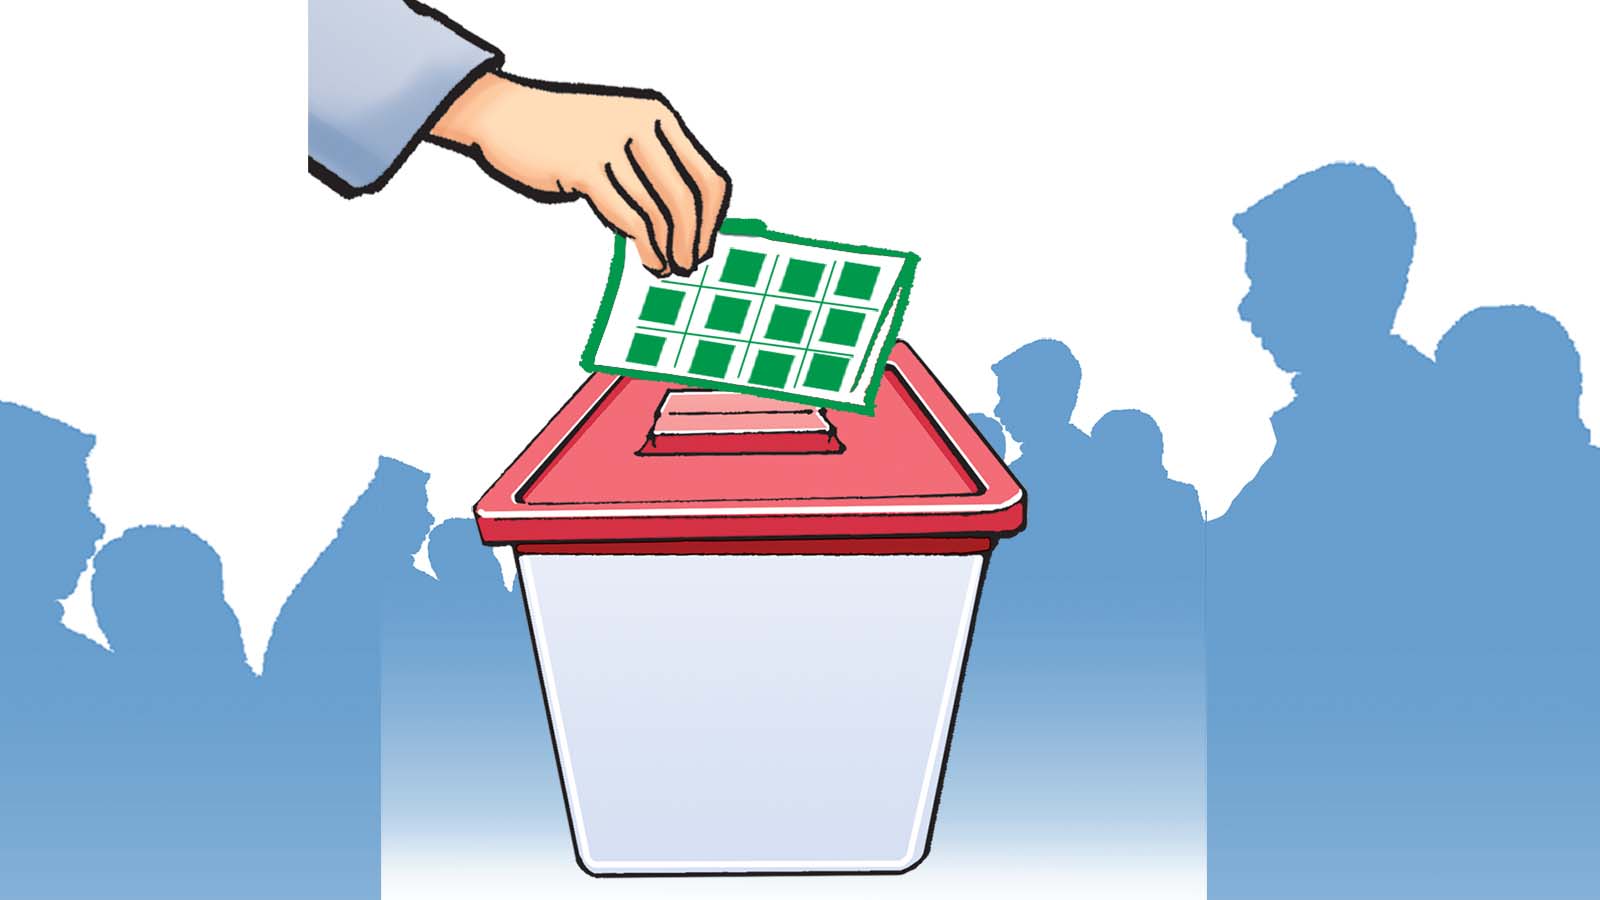 इलामको एक मतदान केन्द्रभित्रै नक्कली मतदान